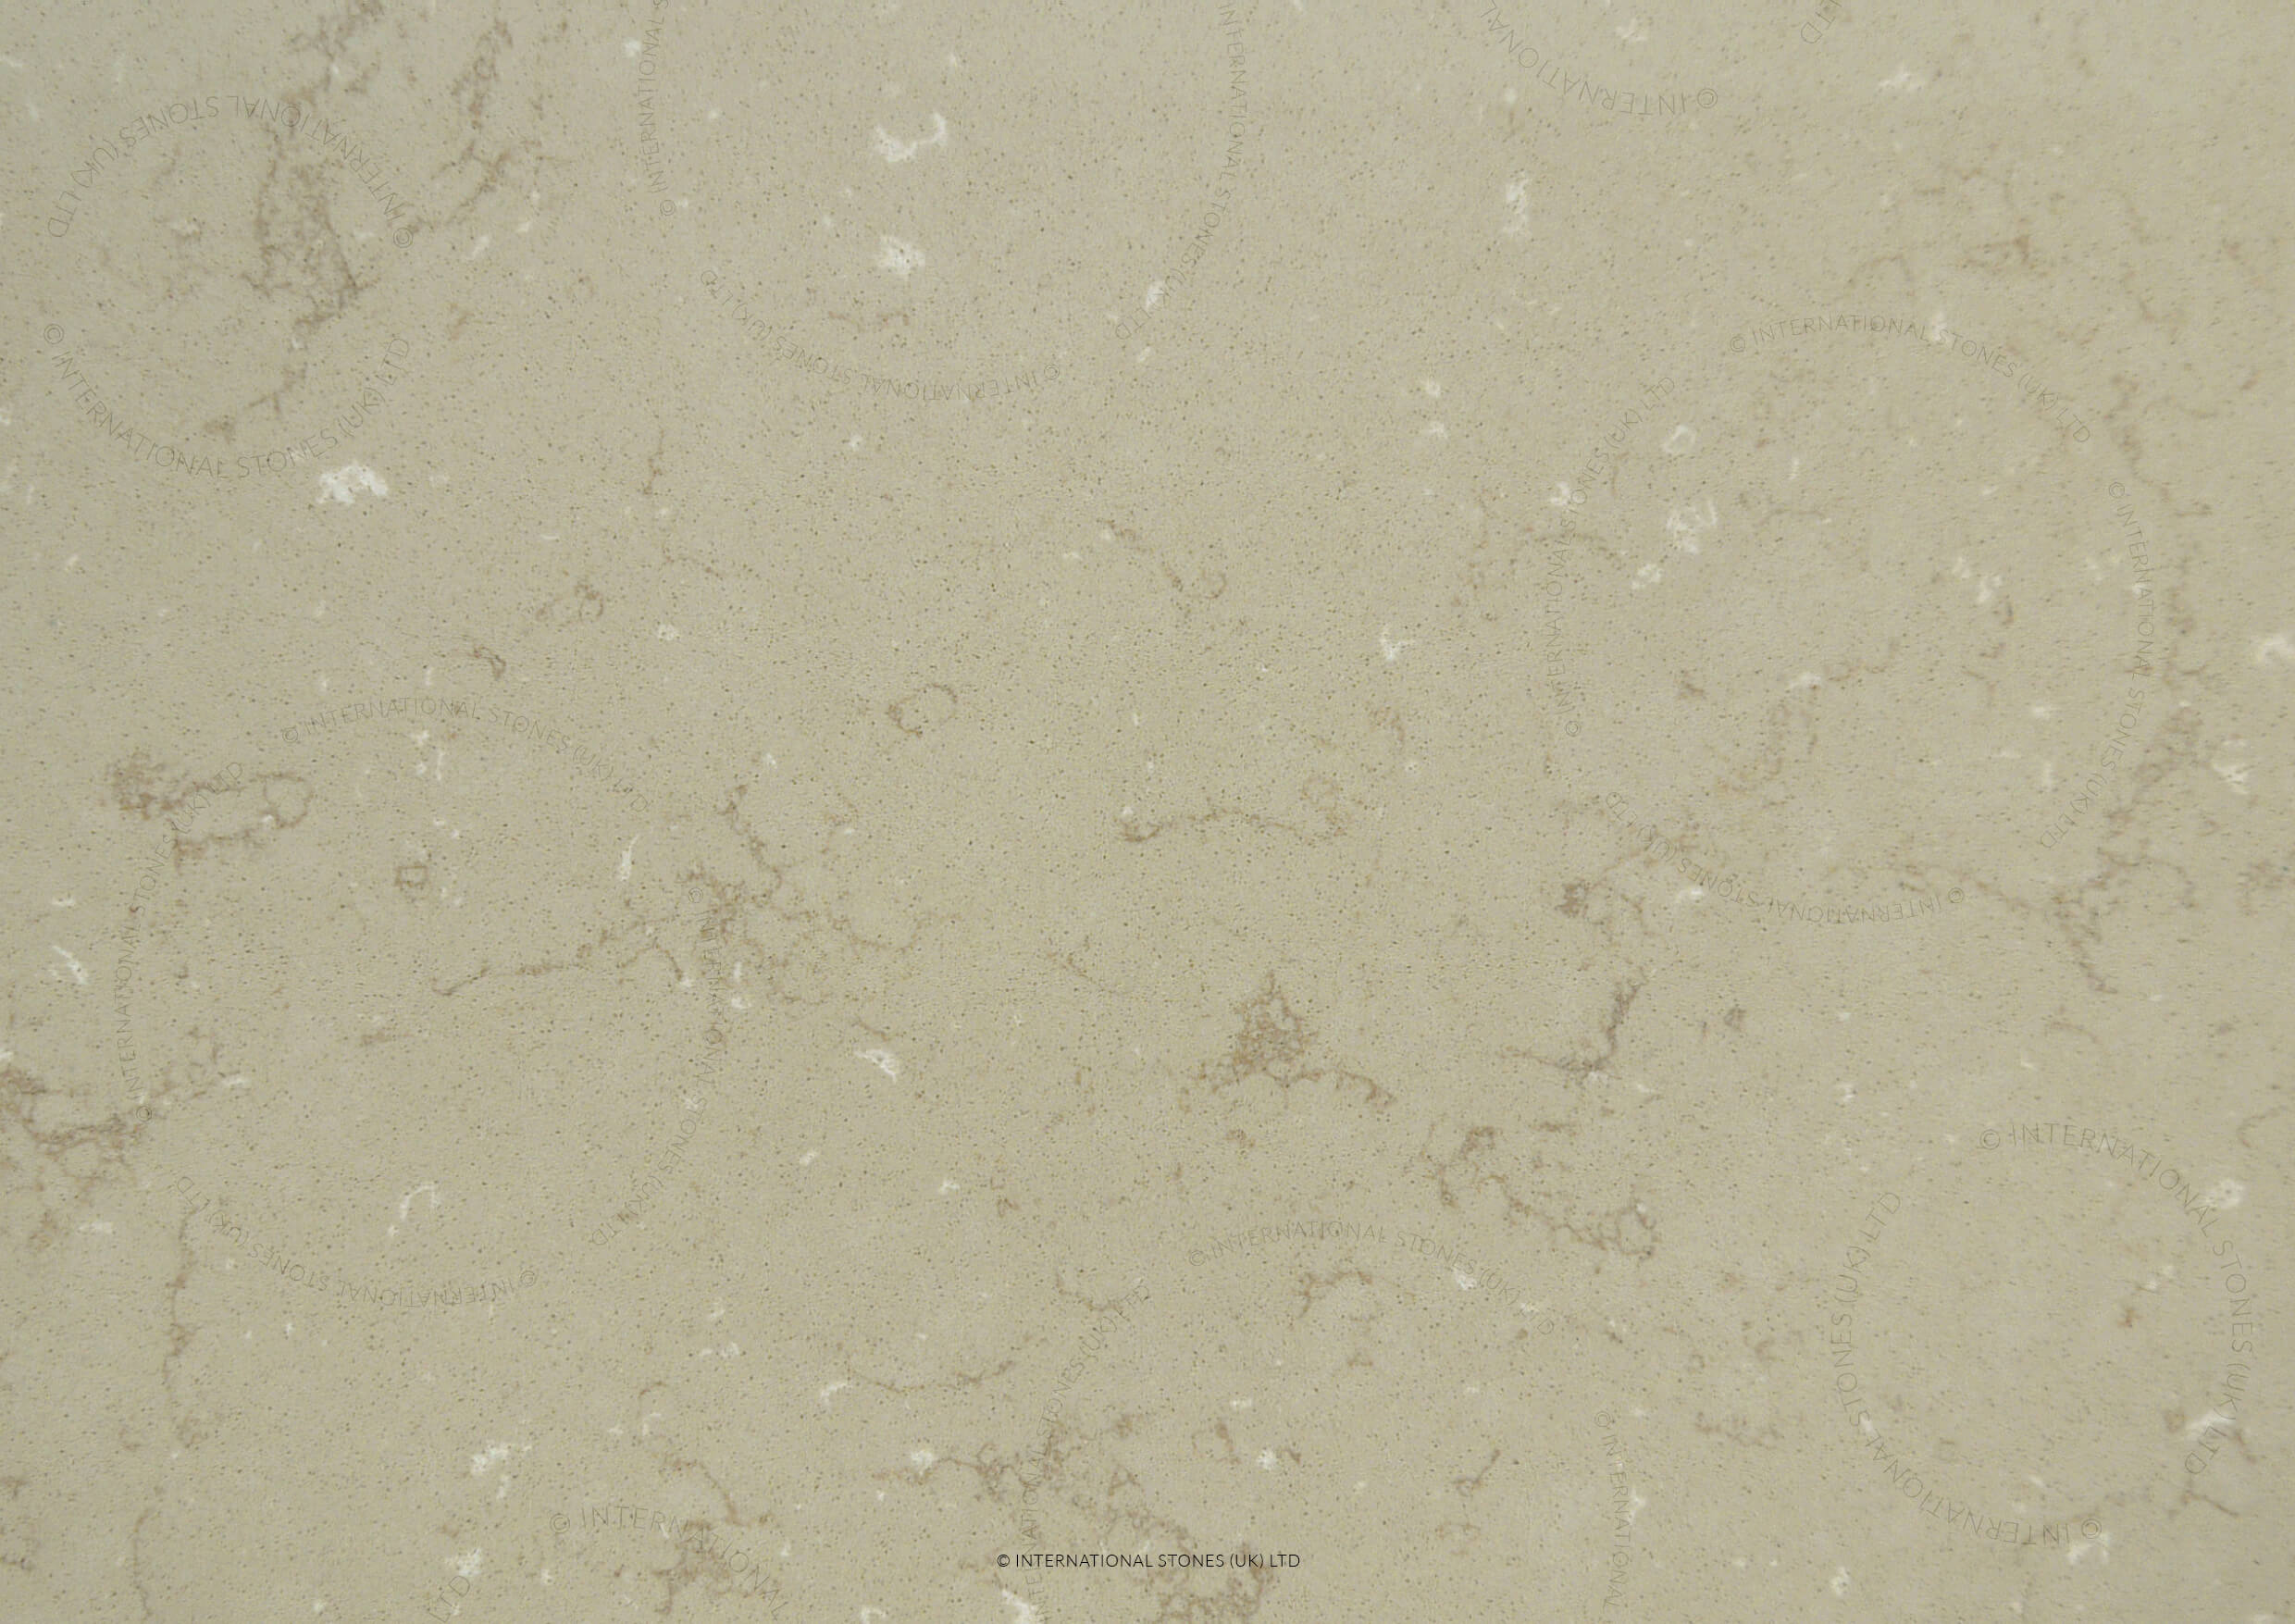 International Stone IQ Limestone - Luton - Ampthill